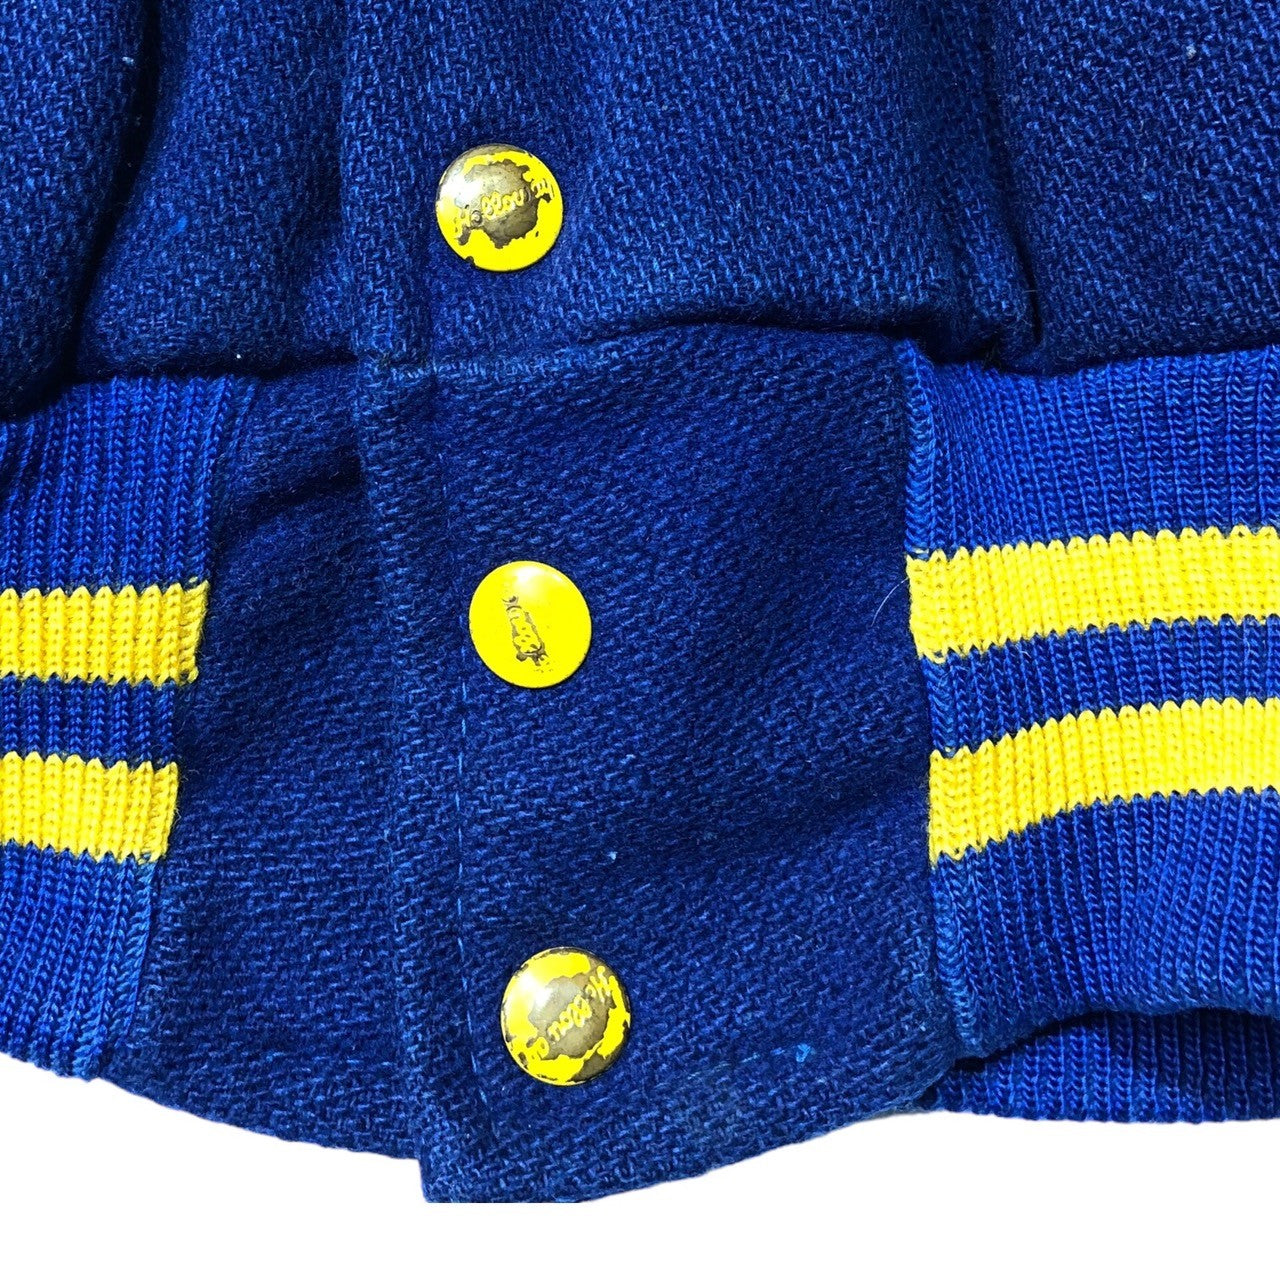 HOLLOWAY(ホロウェイ) 50's "DELPHOS"  wool stadium jacket ウール スタジャン ジャケット ブルゾン L ブルー USA製 ヴィンテージ 50年代